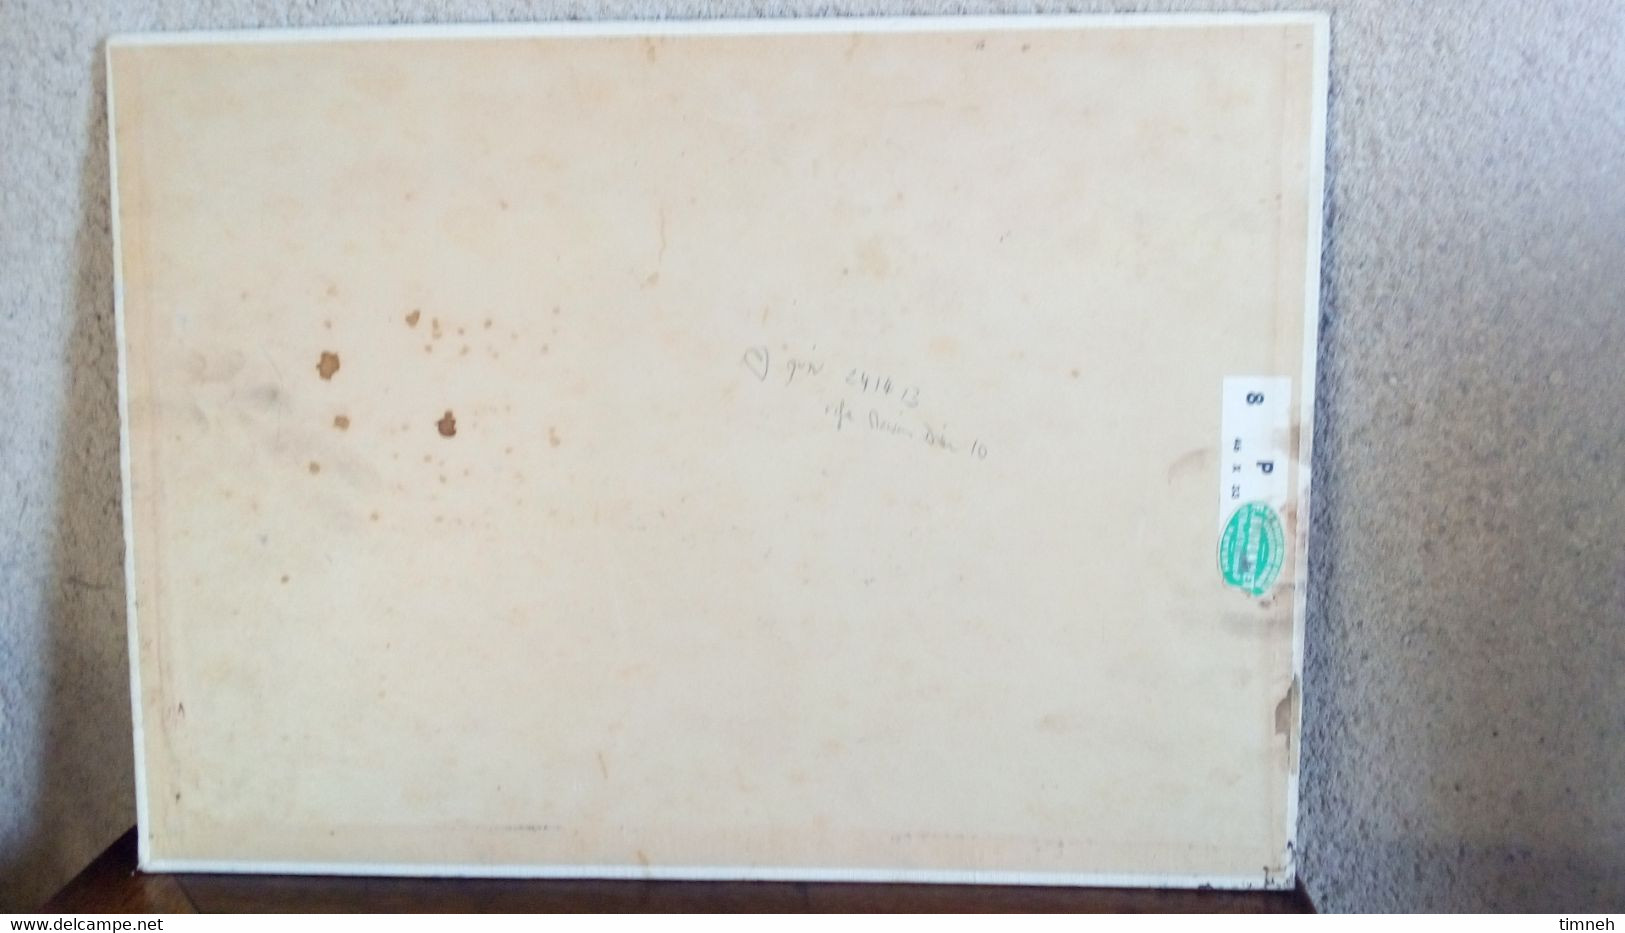 CORBIGNY - ABBAYE SAINT LEONARD - signé - 1924 - 46cmx33cm - HUILE toile & carton sans cadre ENCADREMENT GUYONNET NEVERS